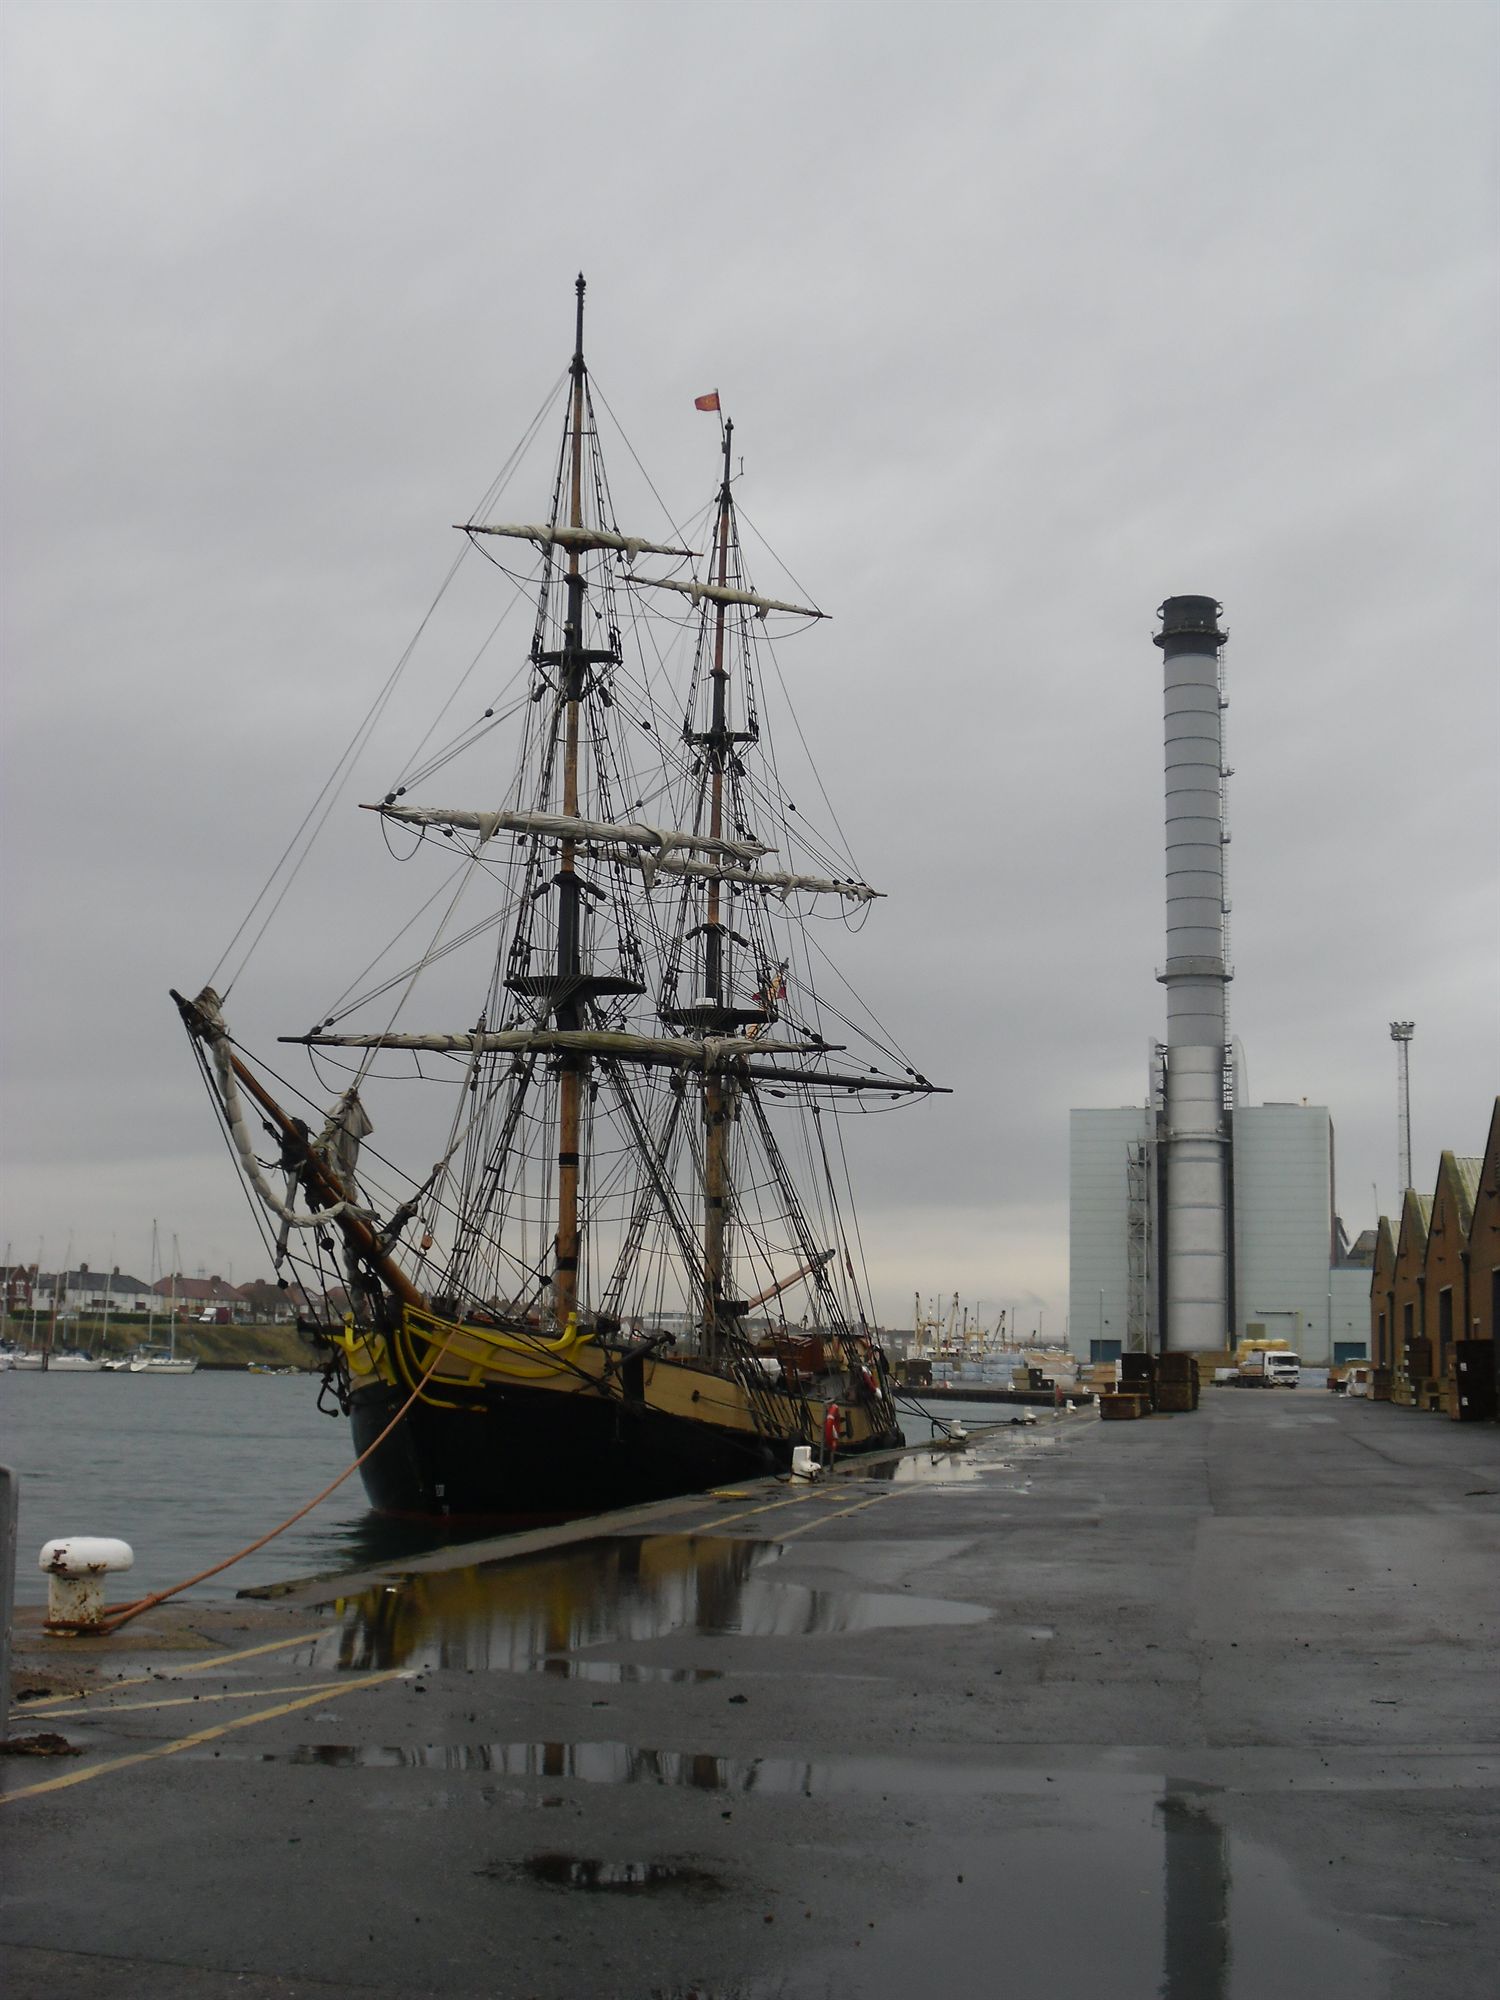 Hornblower's ship seeks refuge in Shoreham Port